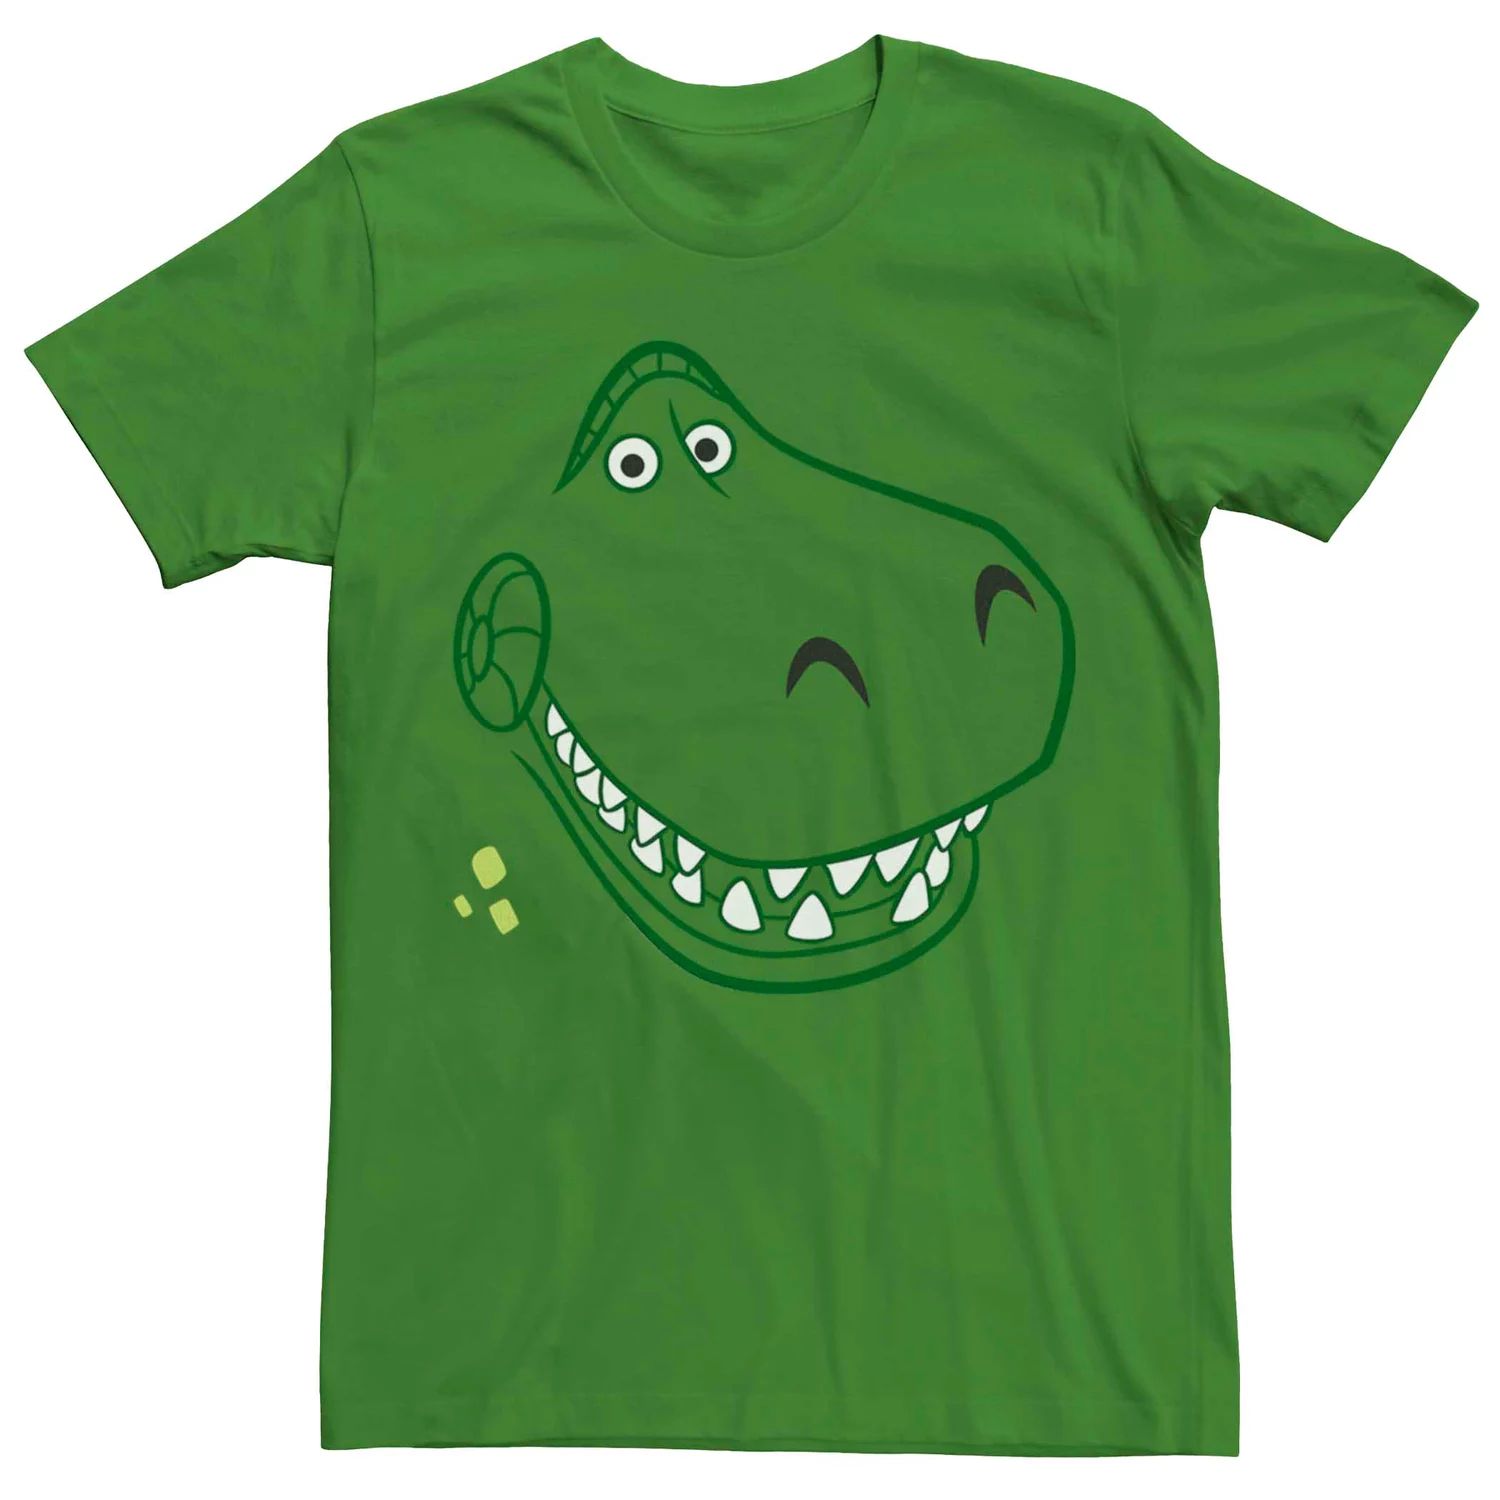 мужская футболка disney pixar toy story rex face licensed character Мужская футболка Disney Pixar Toy Story Rex Face Licensed Character